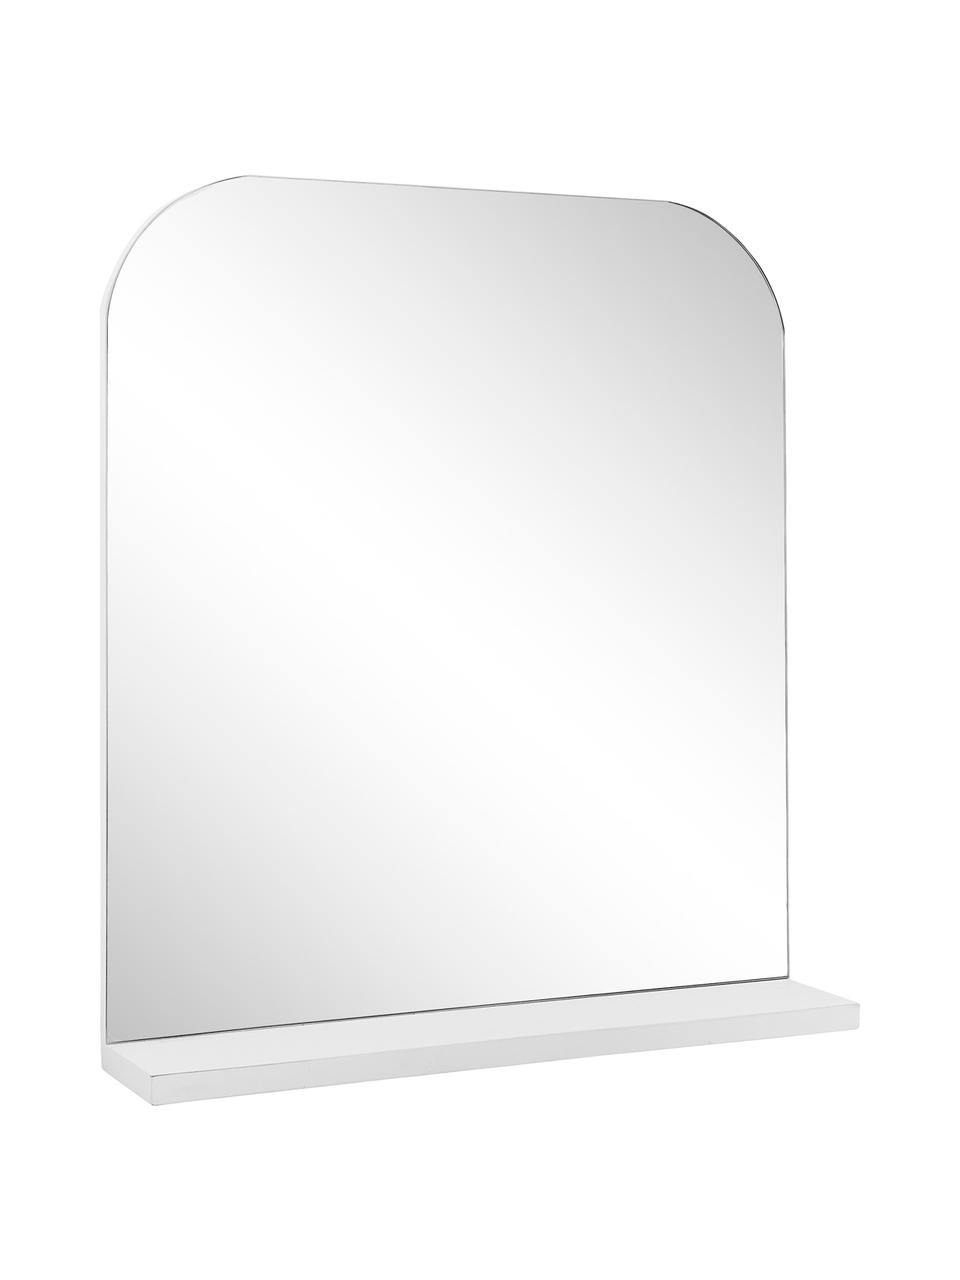 Wandspiegel Pina mit weißer Ablagefläche, Ablagefläche: Holz, Spiegelfläche: Spiegelglas, Weiß, 55 x 63 cm